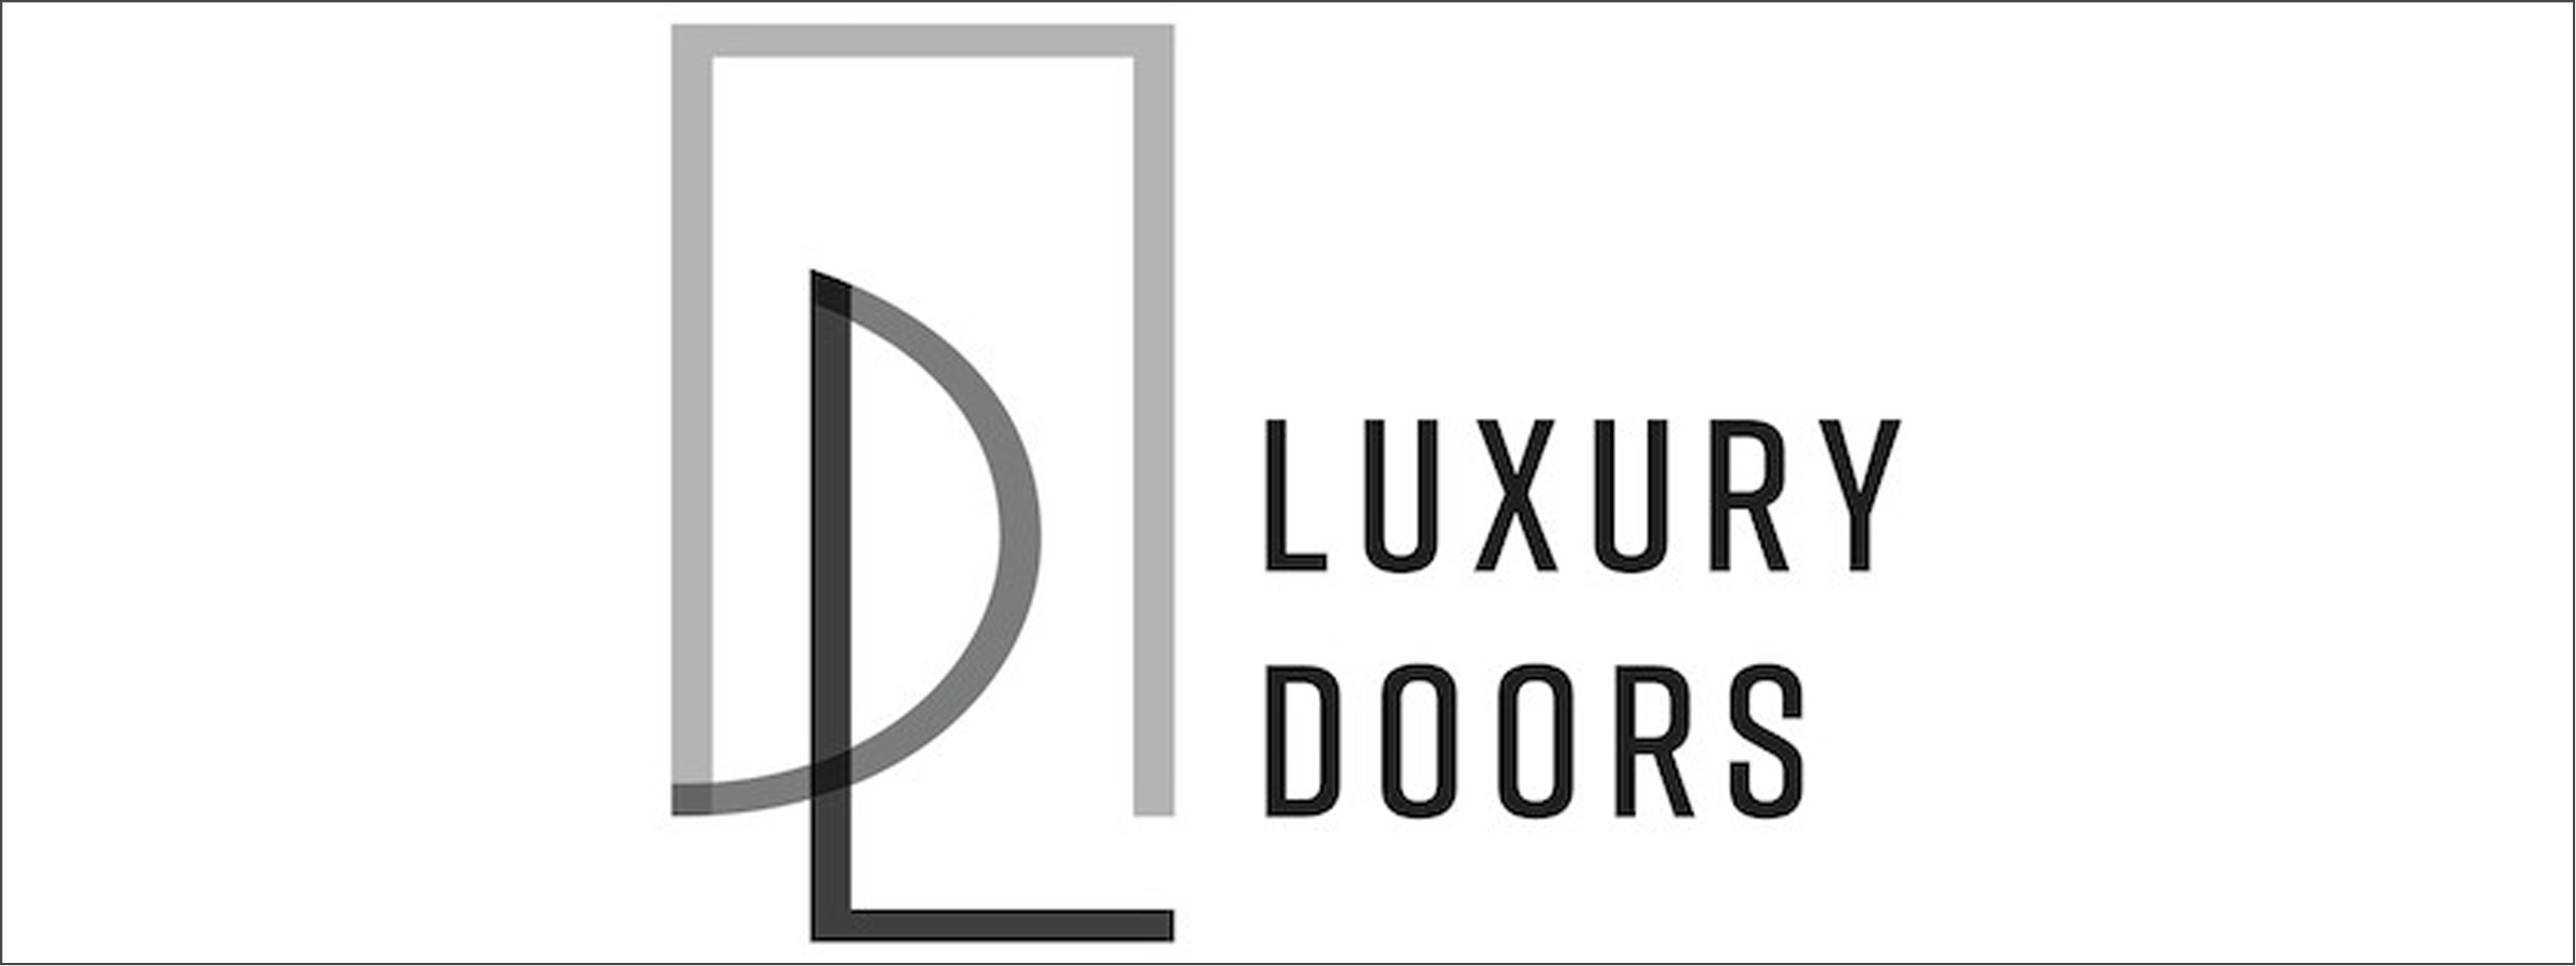 LUXURY DOORS